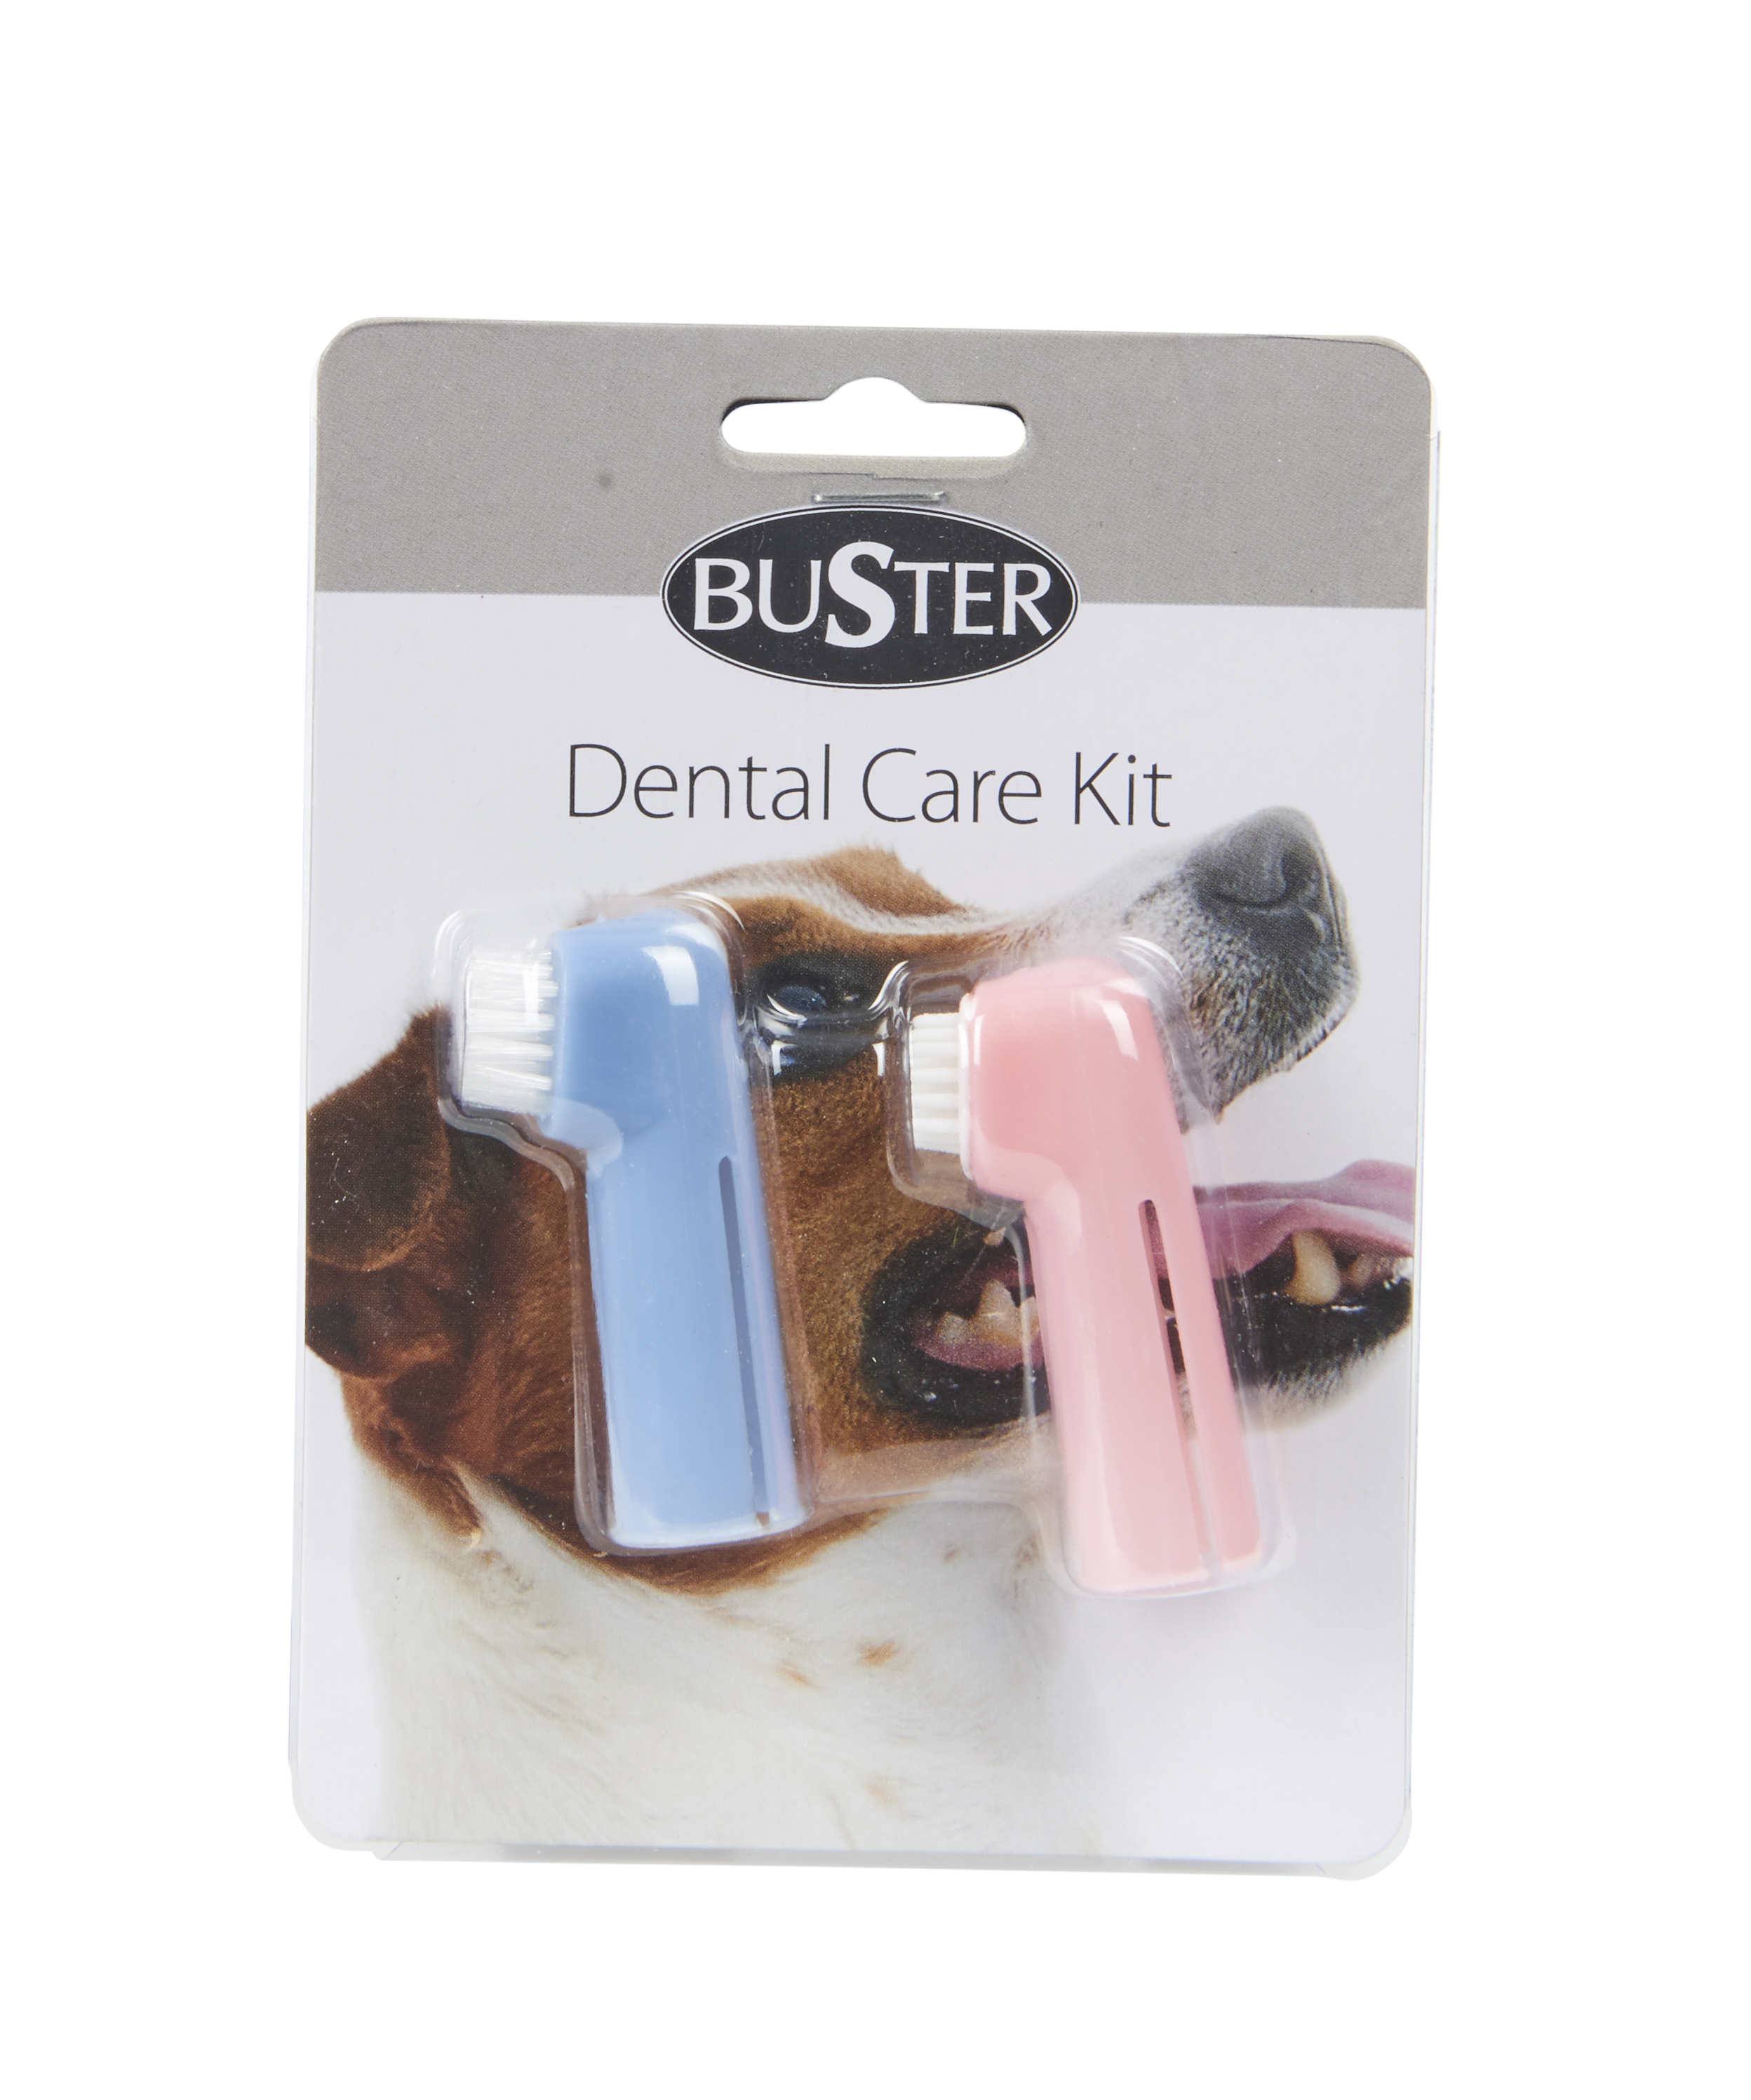 BUSTER dental care set, 2 brushes